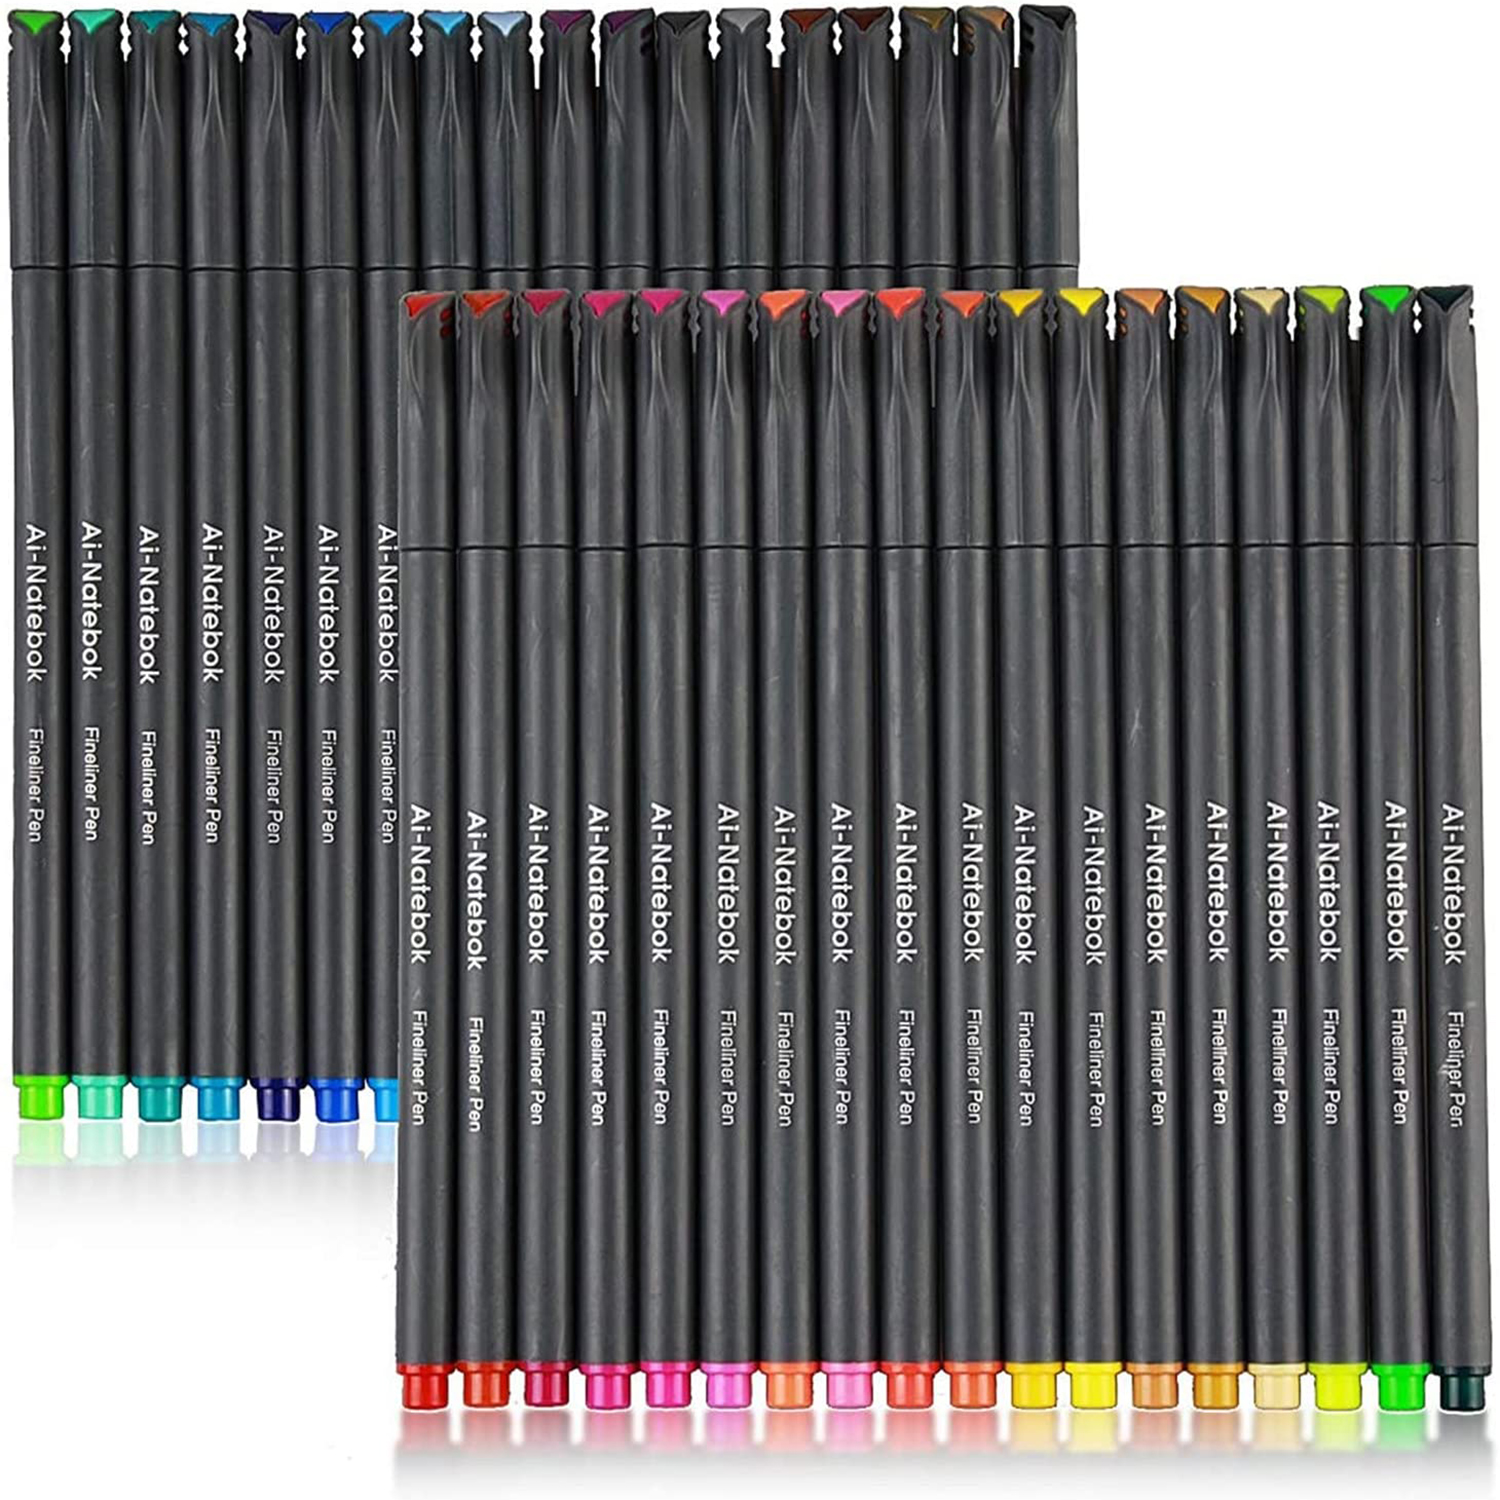 100 색 저널 플래너 펜, 컬러 파인 포인트 펜, 필기용 파인라이너 펜, 0.4mm 펜